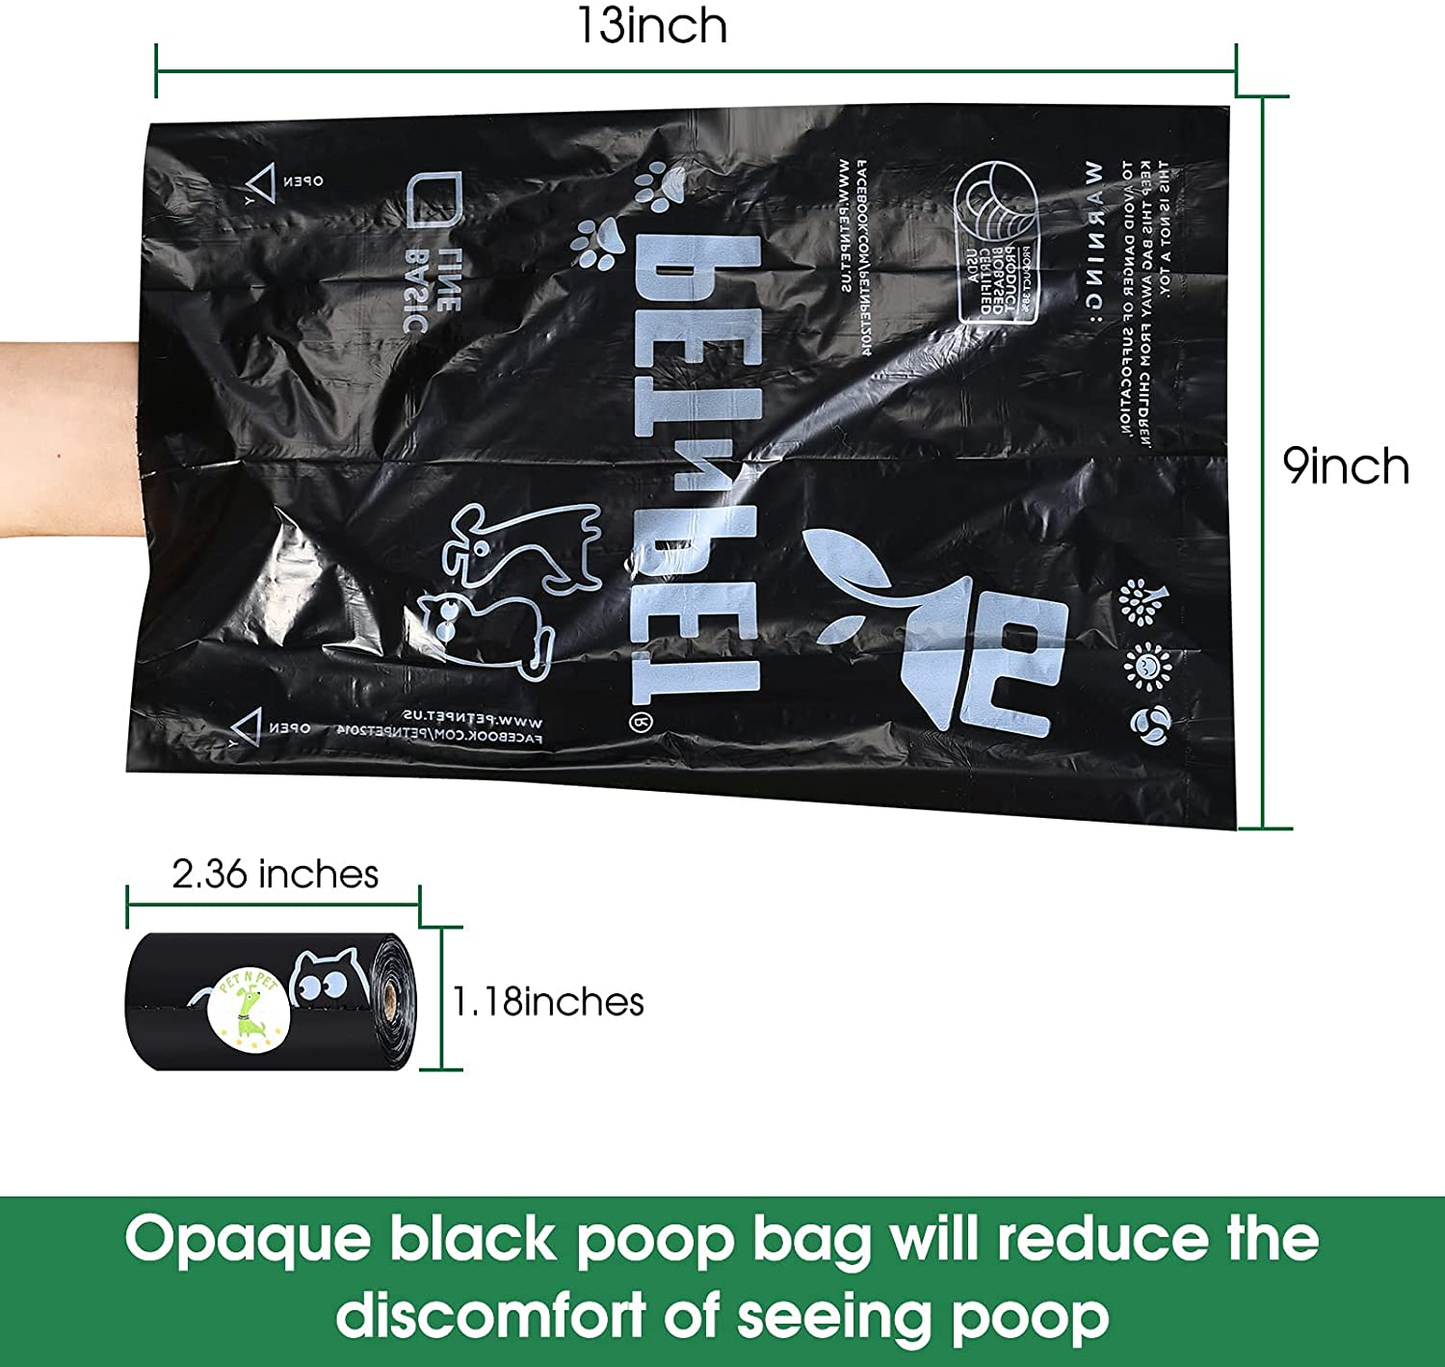 Dog Poop Bag USDA Certified 38% Biobased Poop Bags 270/540/1080 Counts Doggie Poop Bags 9X13 Inches Dog Bags for Poop